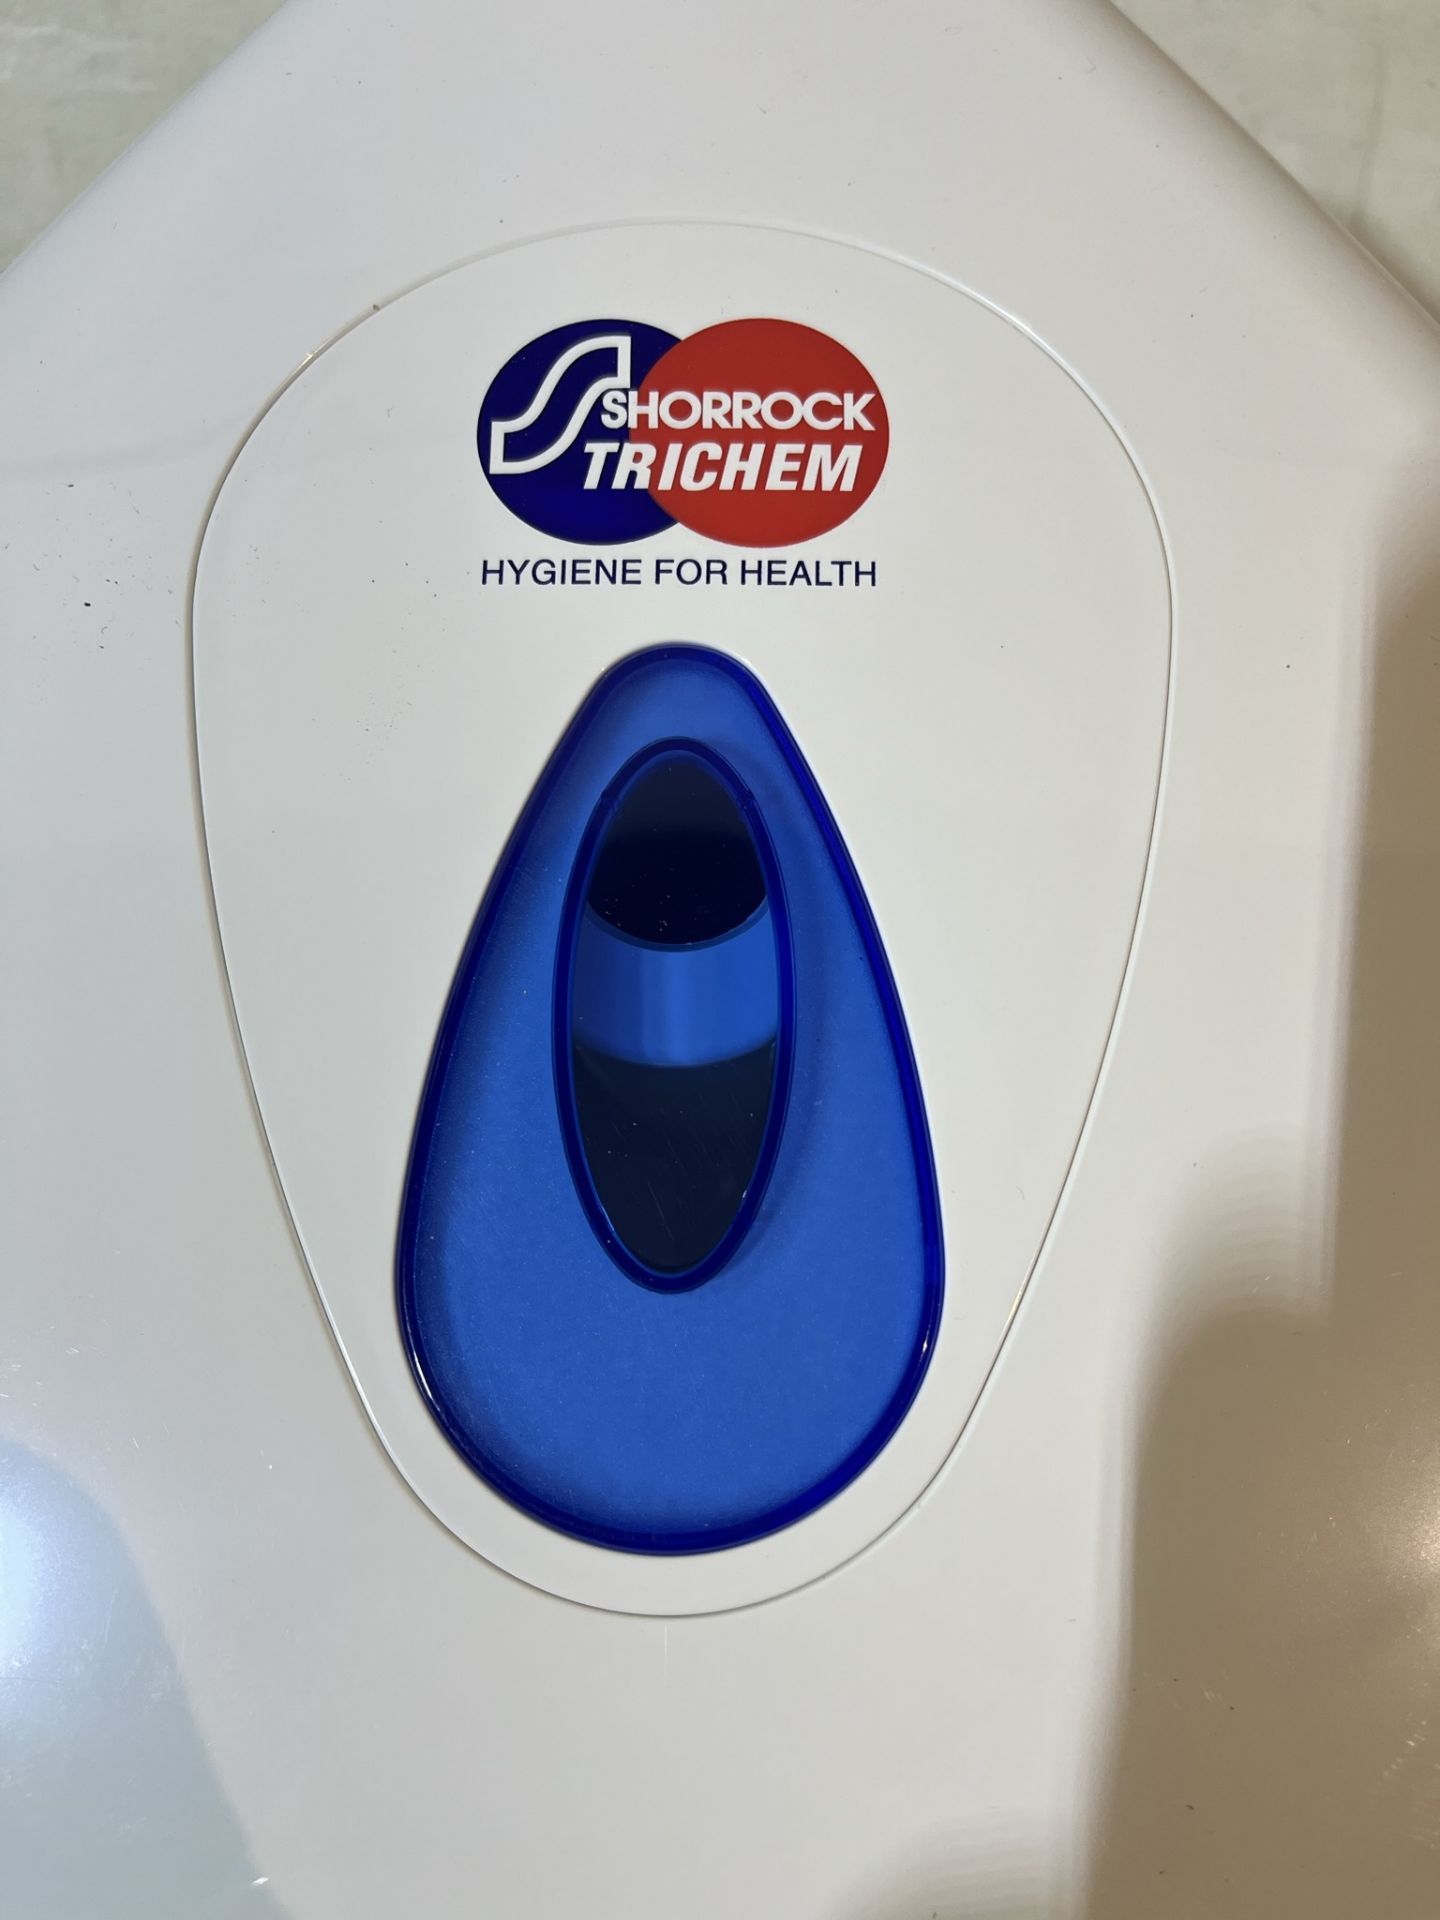 Shorrock Trichem Paper Towel Dispenser - Image 4 of 4